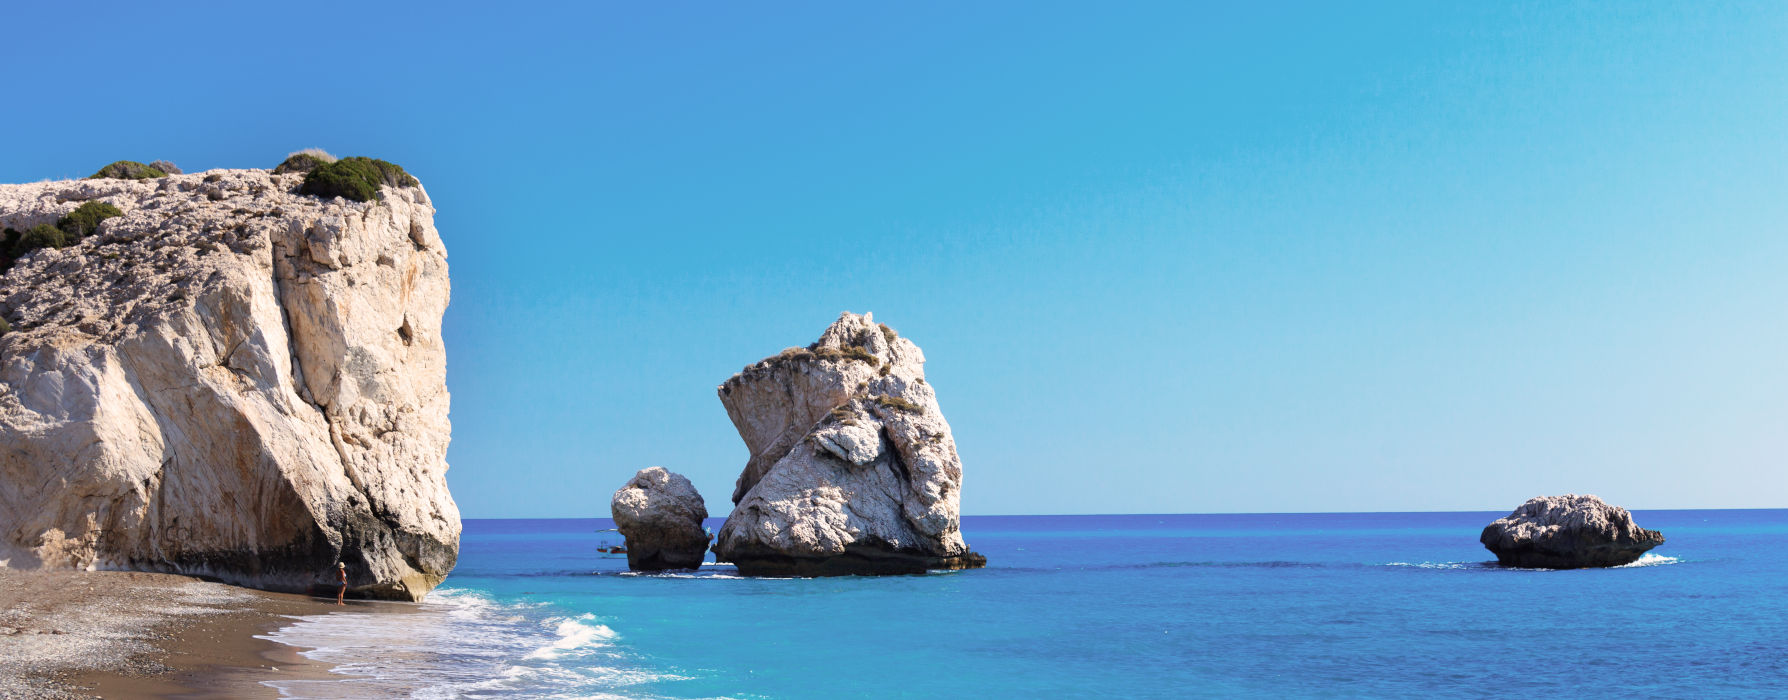  Cyprus holidays